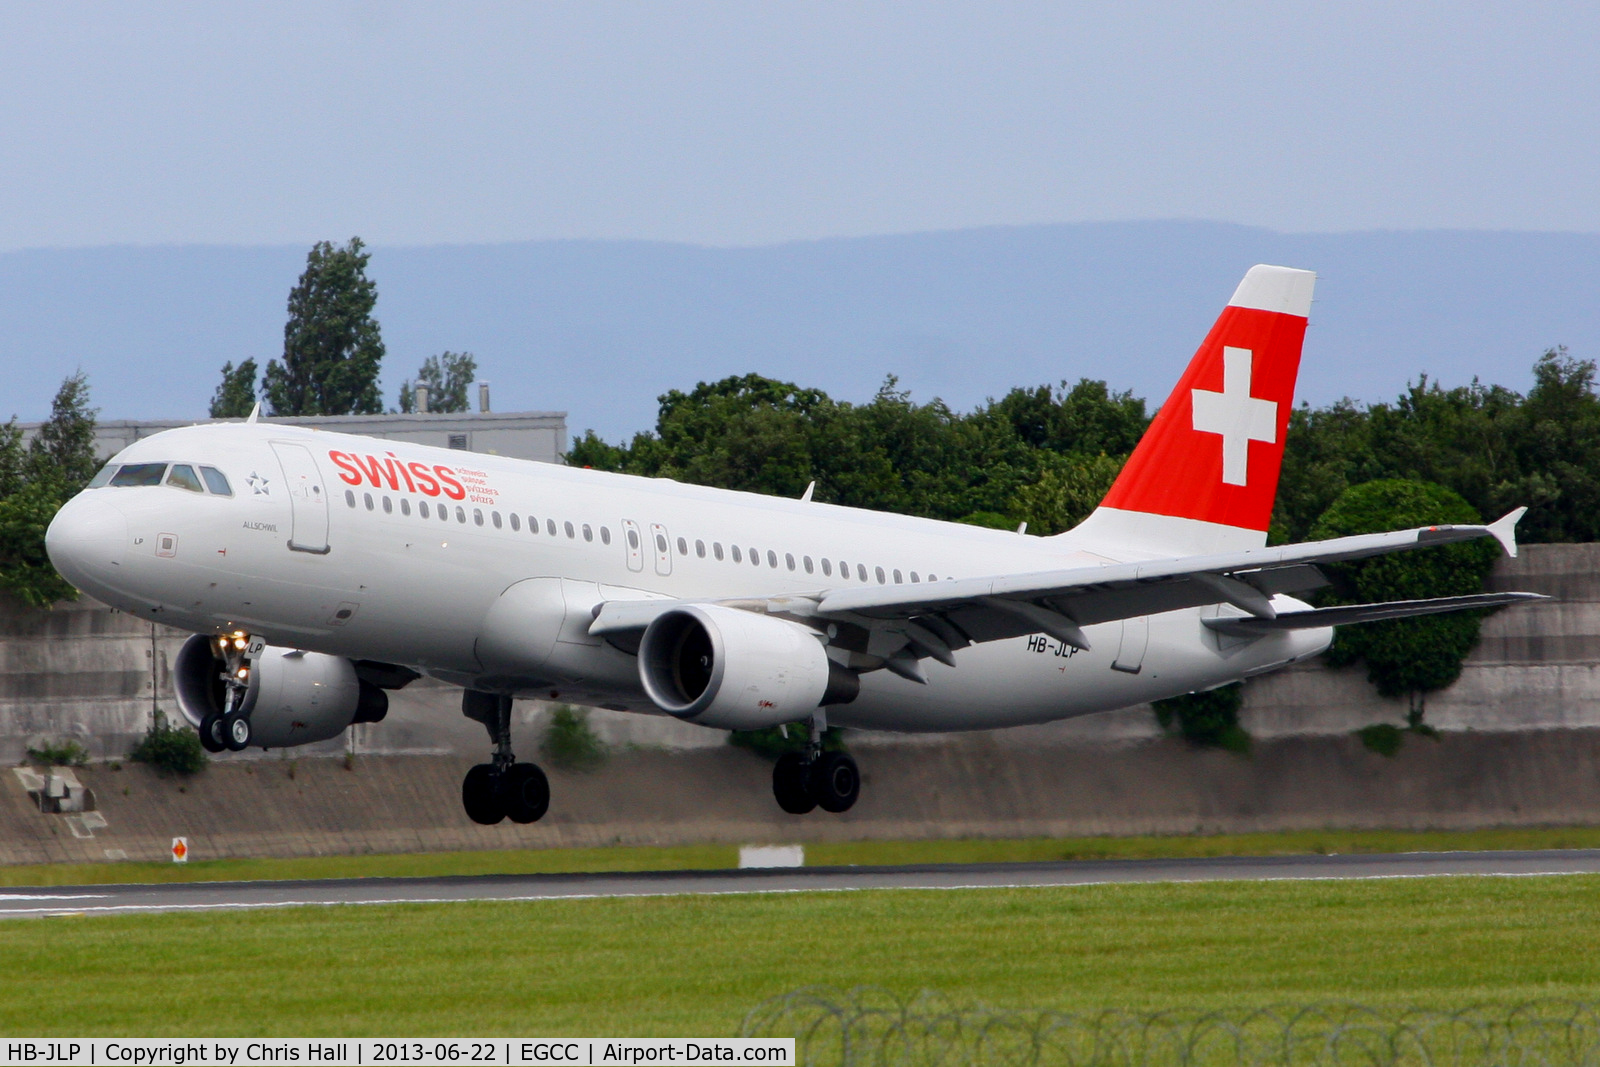 HB-JLP, 2011 Airbus A320-214 C/N 4618, Swiss